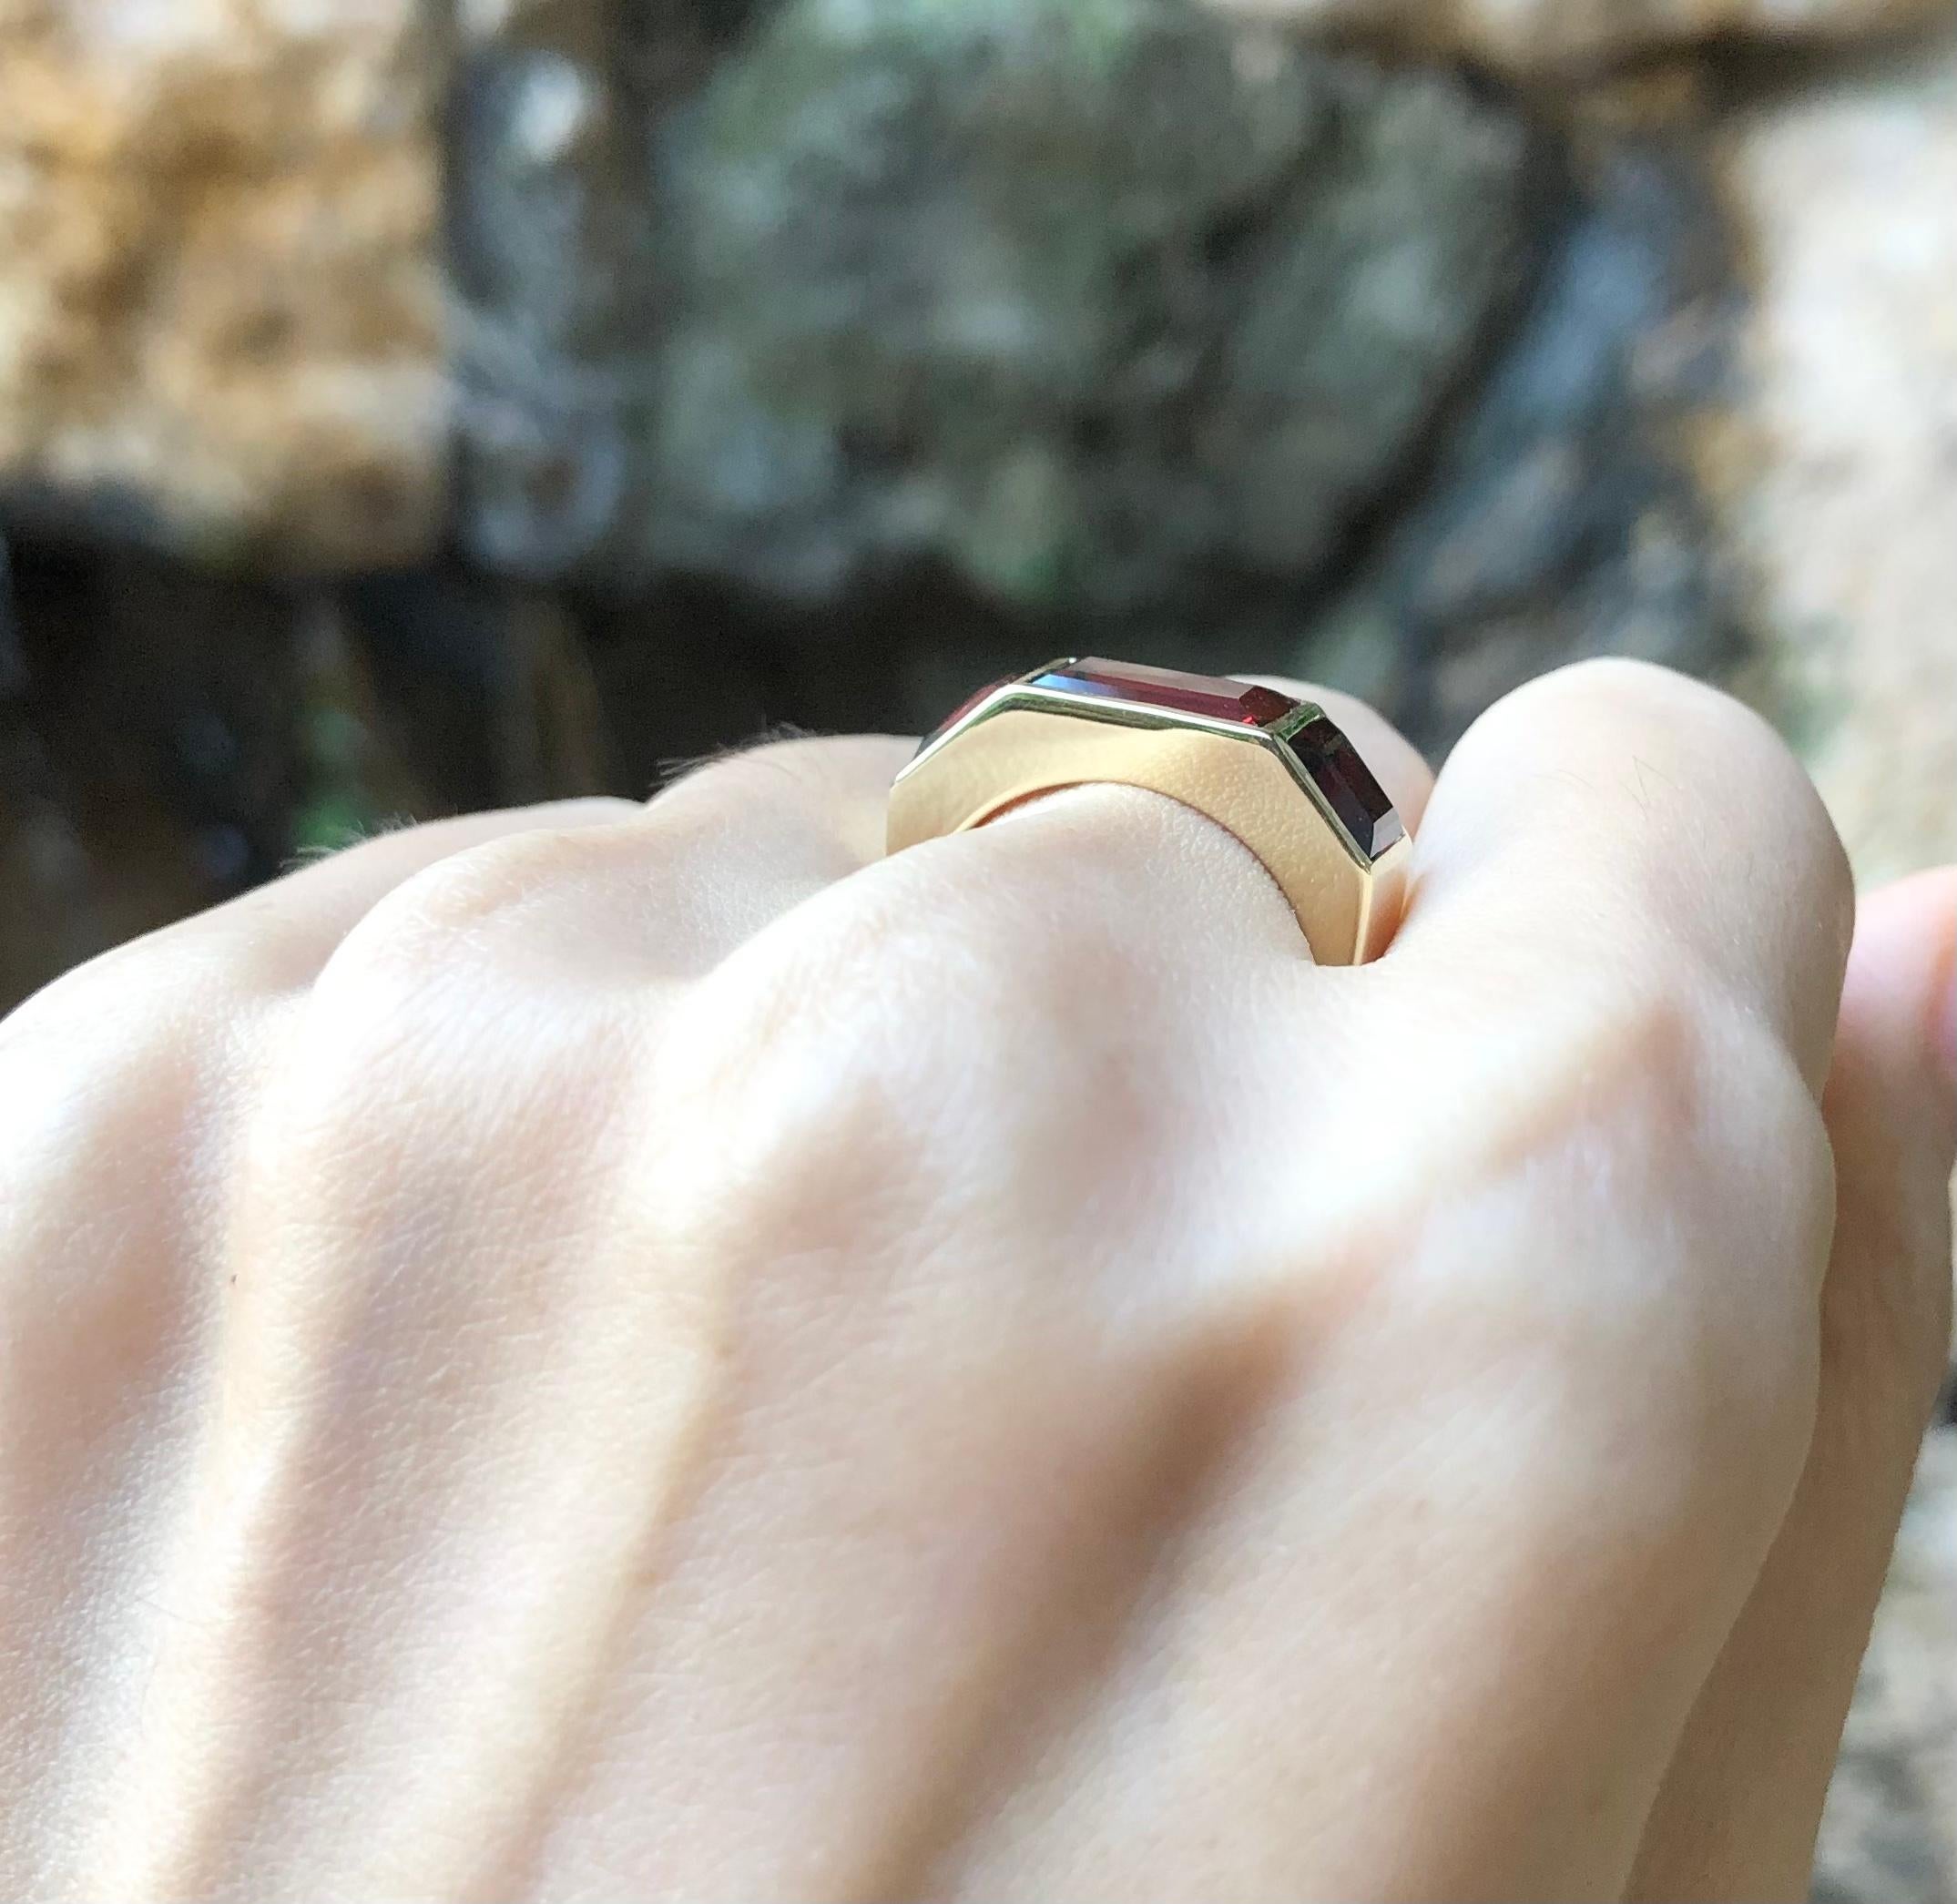 Granat 5,26 Karat Ring in 18 Karat Goldfassung

Breite:  2.0 cm 
Länge: 0,7 cm
Ringgröße: 53
Gesamtgewicht: 8,53 Gramm

